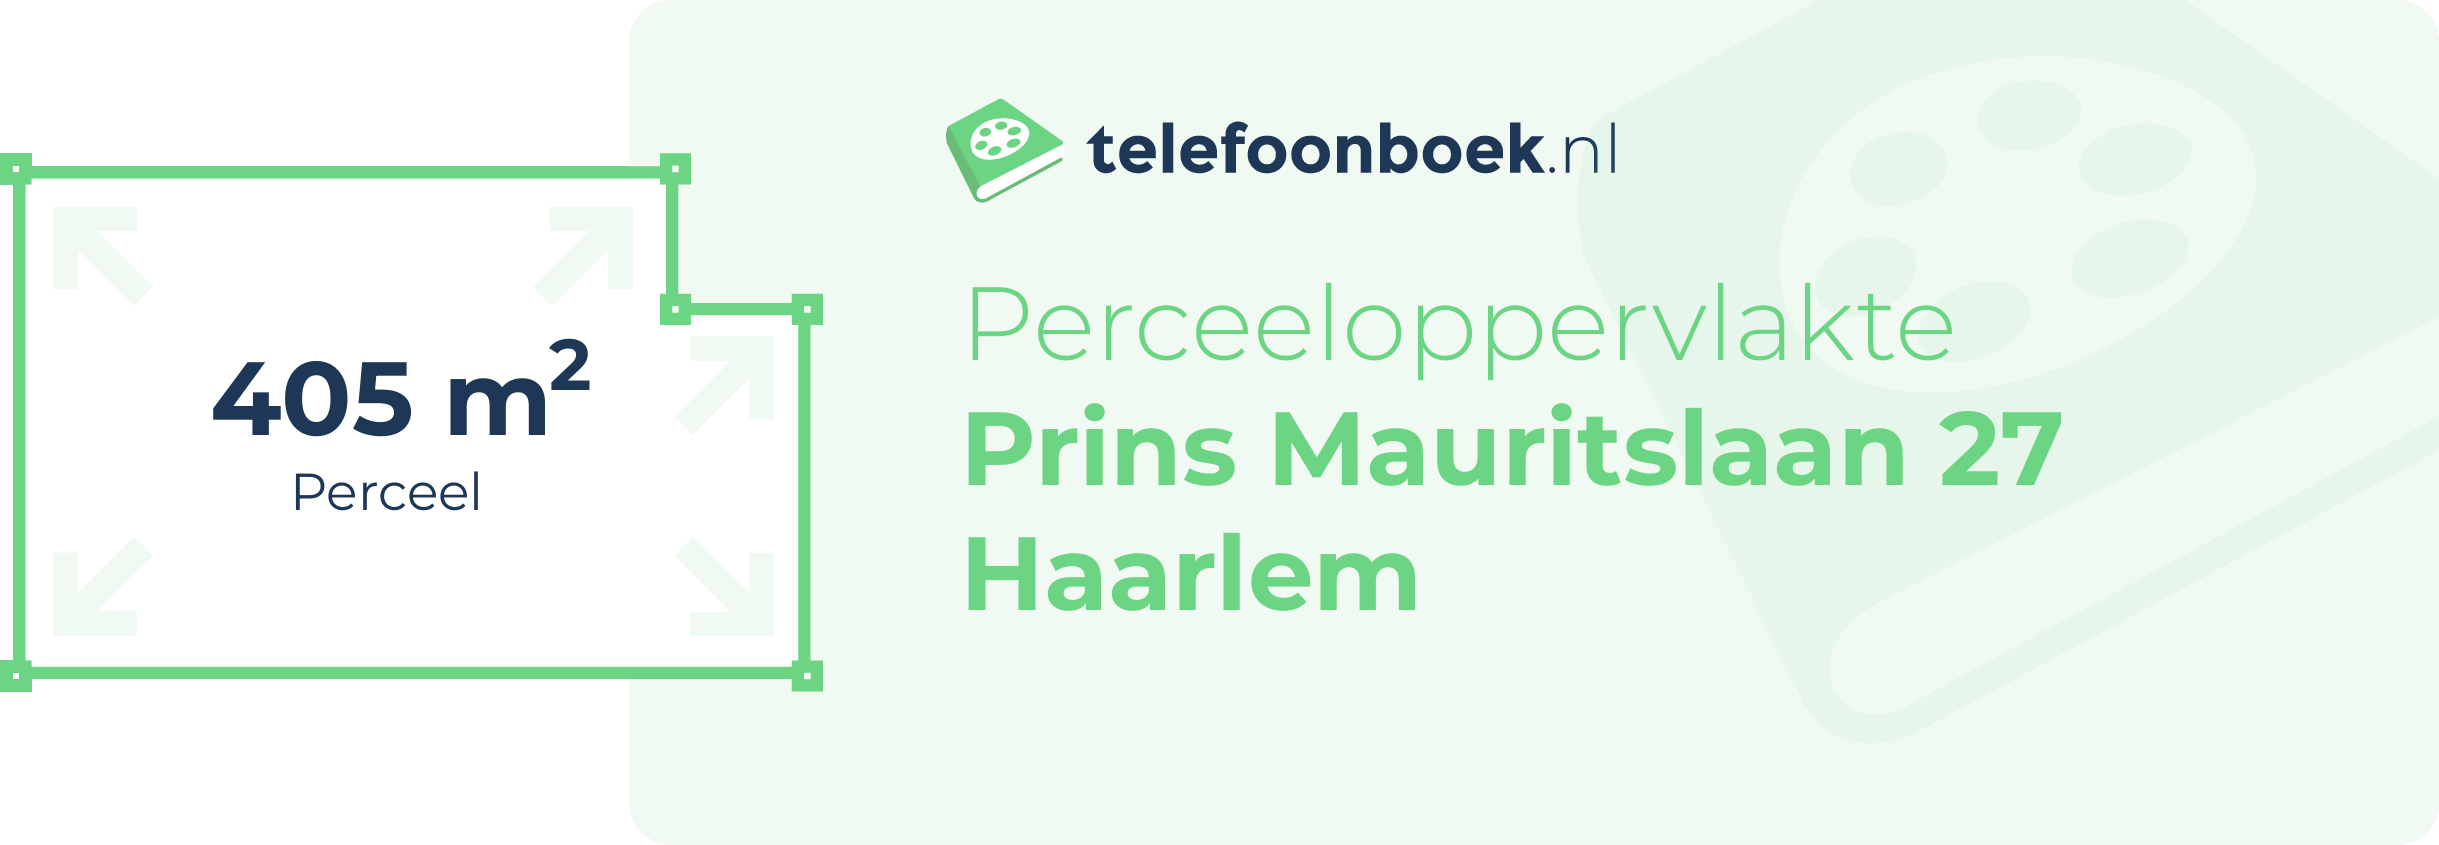 Perceeloppervlakte Prins Mauritslaan 27 Haarlem